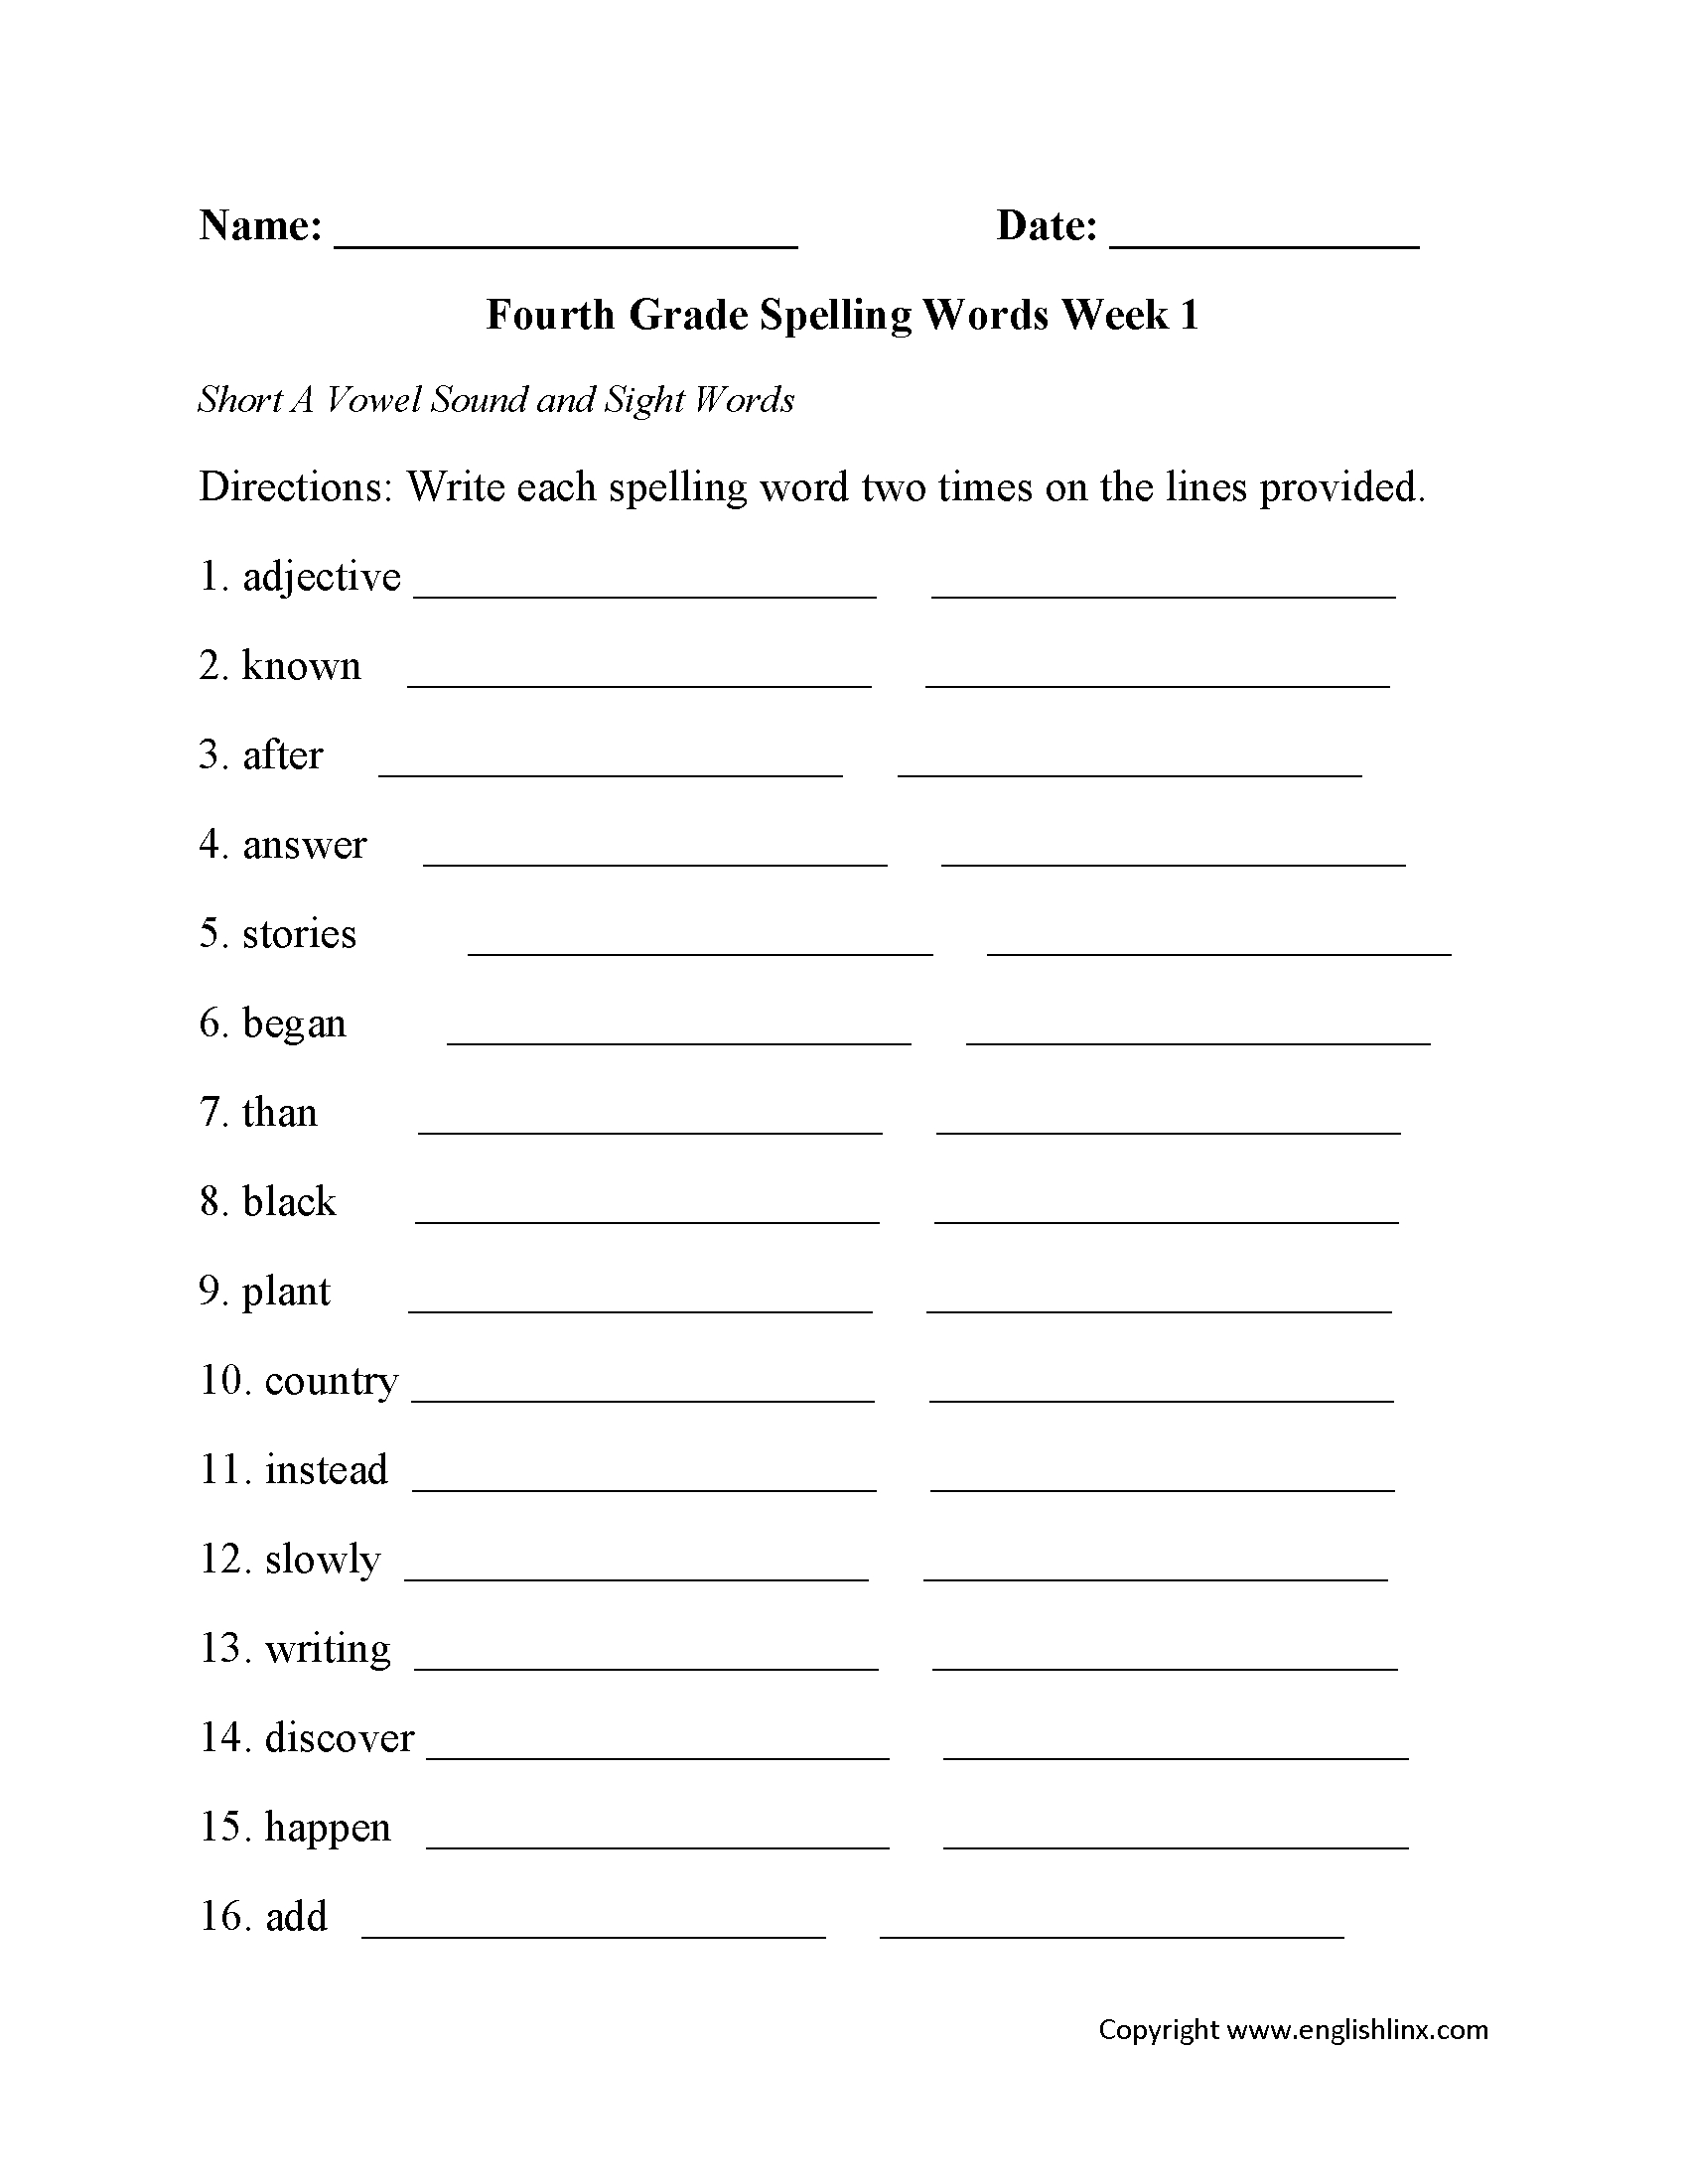 Spelling Worksheets  Fourth Grade Spelling Worksheets Together With 3Rd Grade Spelling Worksheets